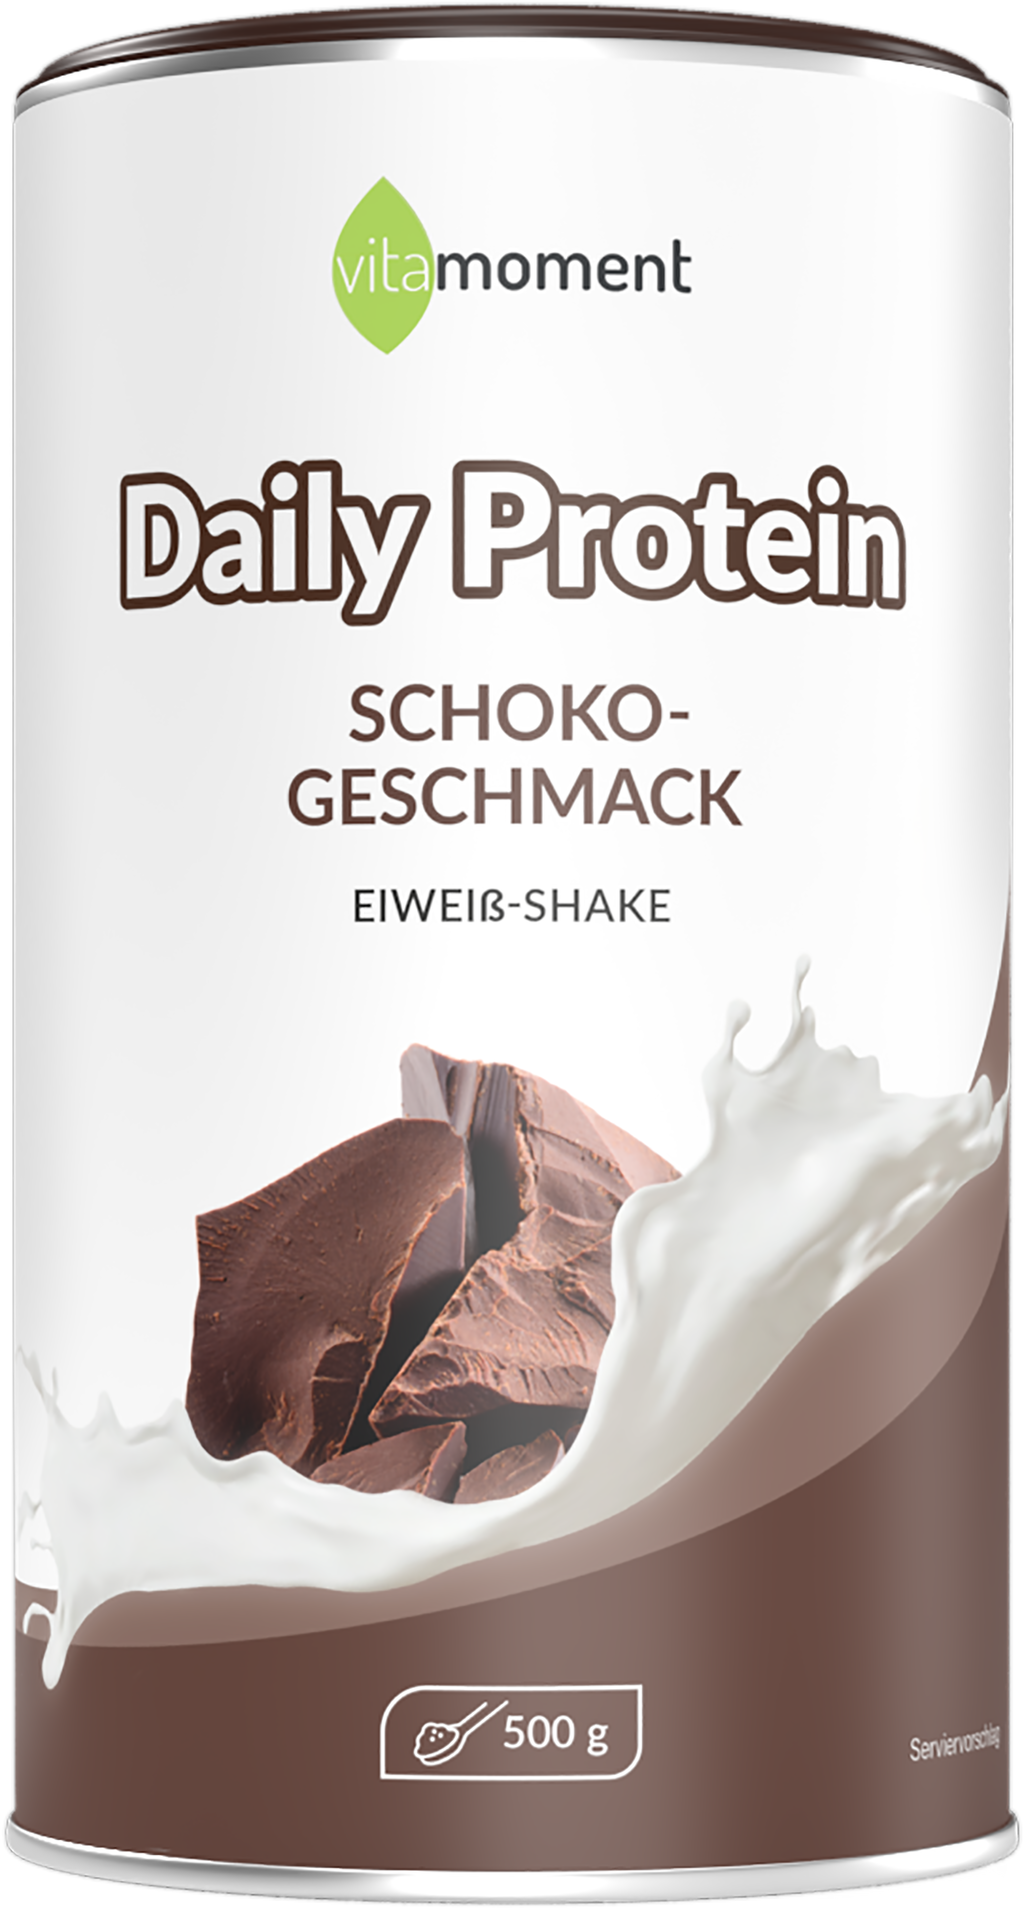 Daily Protein Shake - Schoko, 500g - VitaMoment Produkt